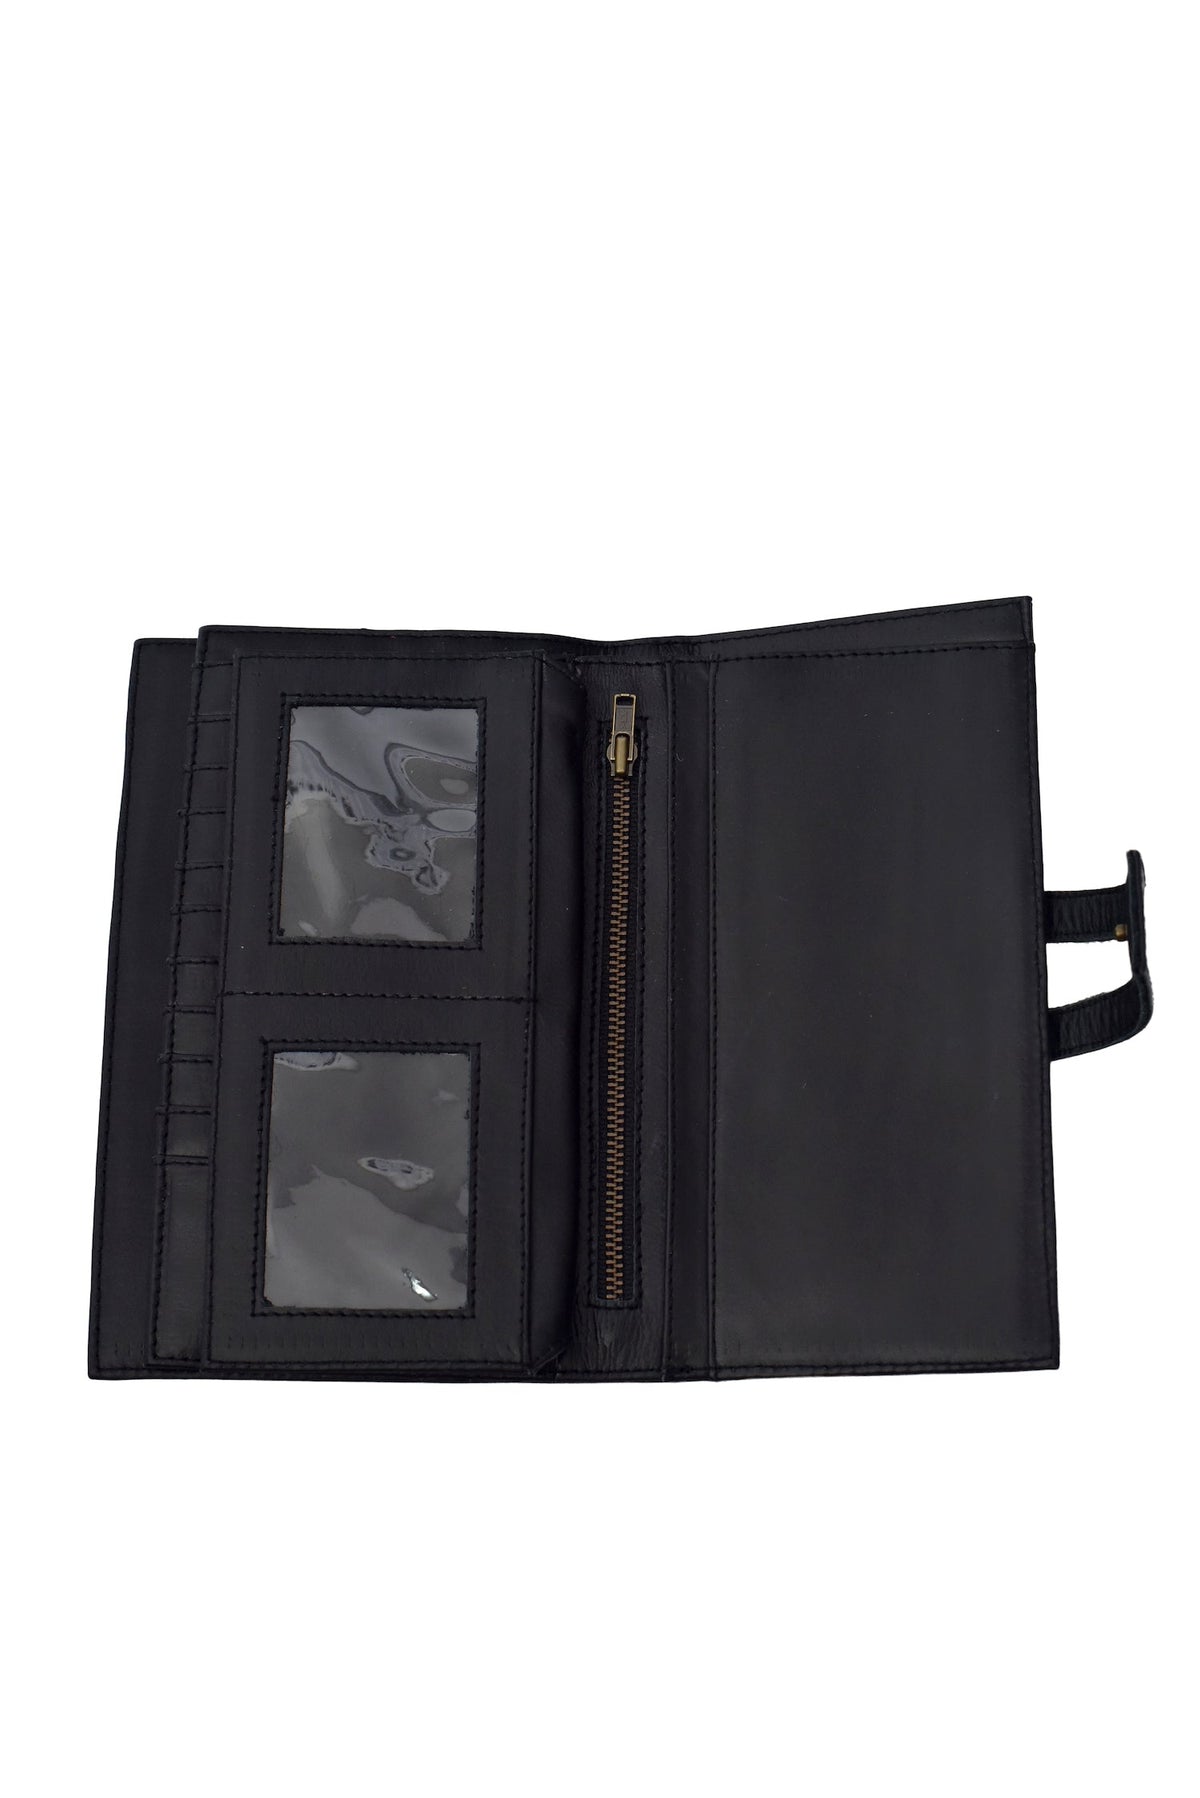 Verona Tri Fold Wallet by ELF